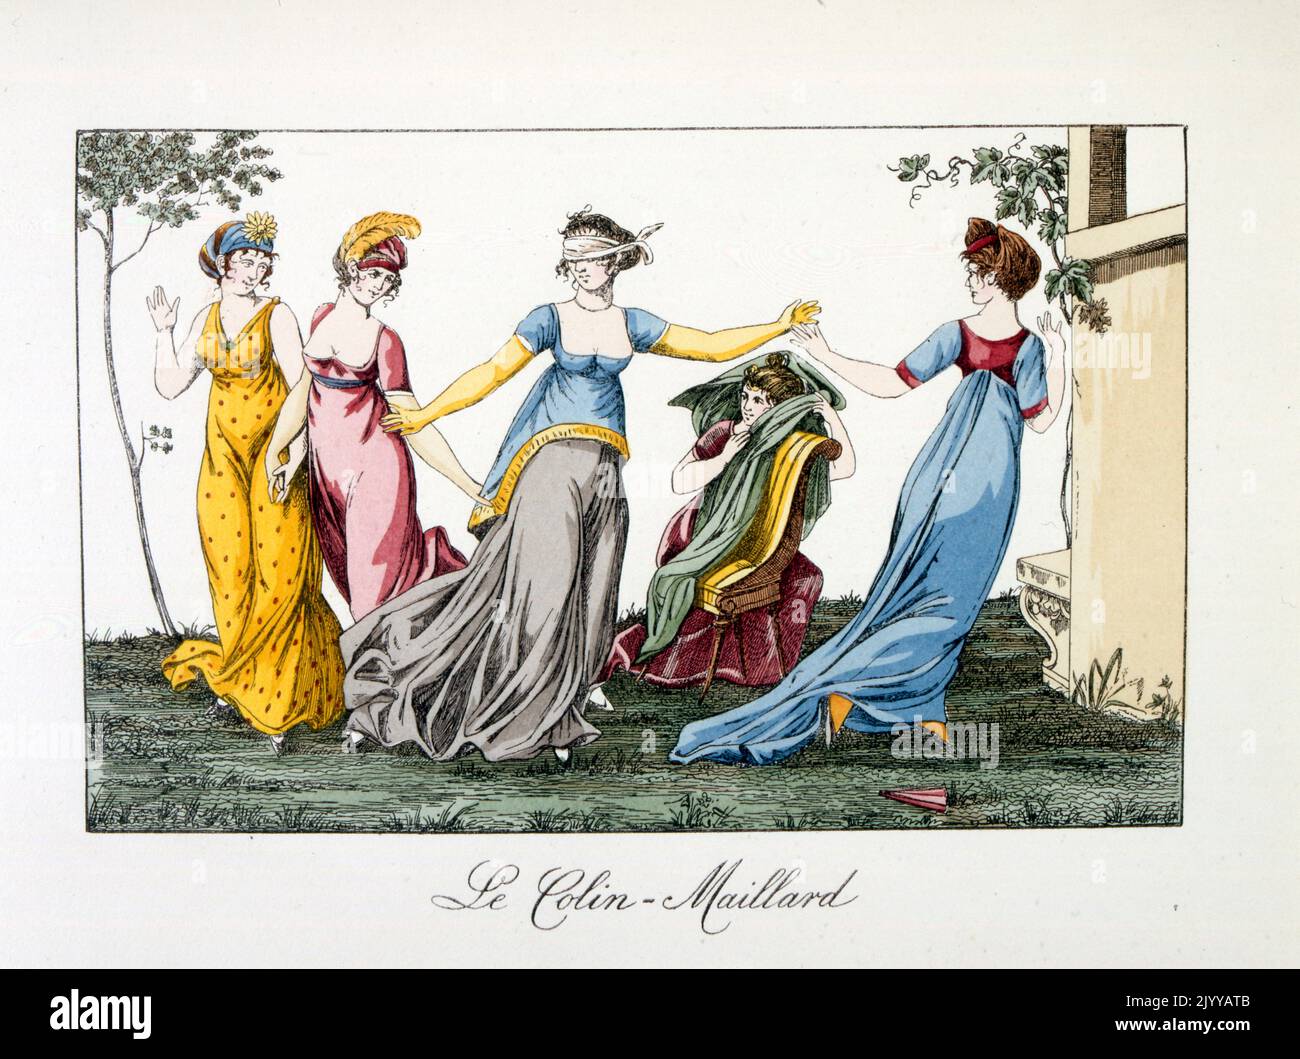 Aquarell-Illustration mit dem Titel „The Colin-Duck“. Ein Gesellschaftsspiel im Freien, bei dem sich die Damen mit verbundenen Augen verfolgen. Stockfoto